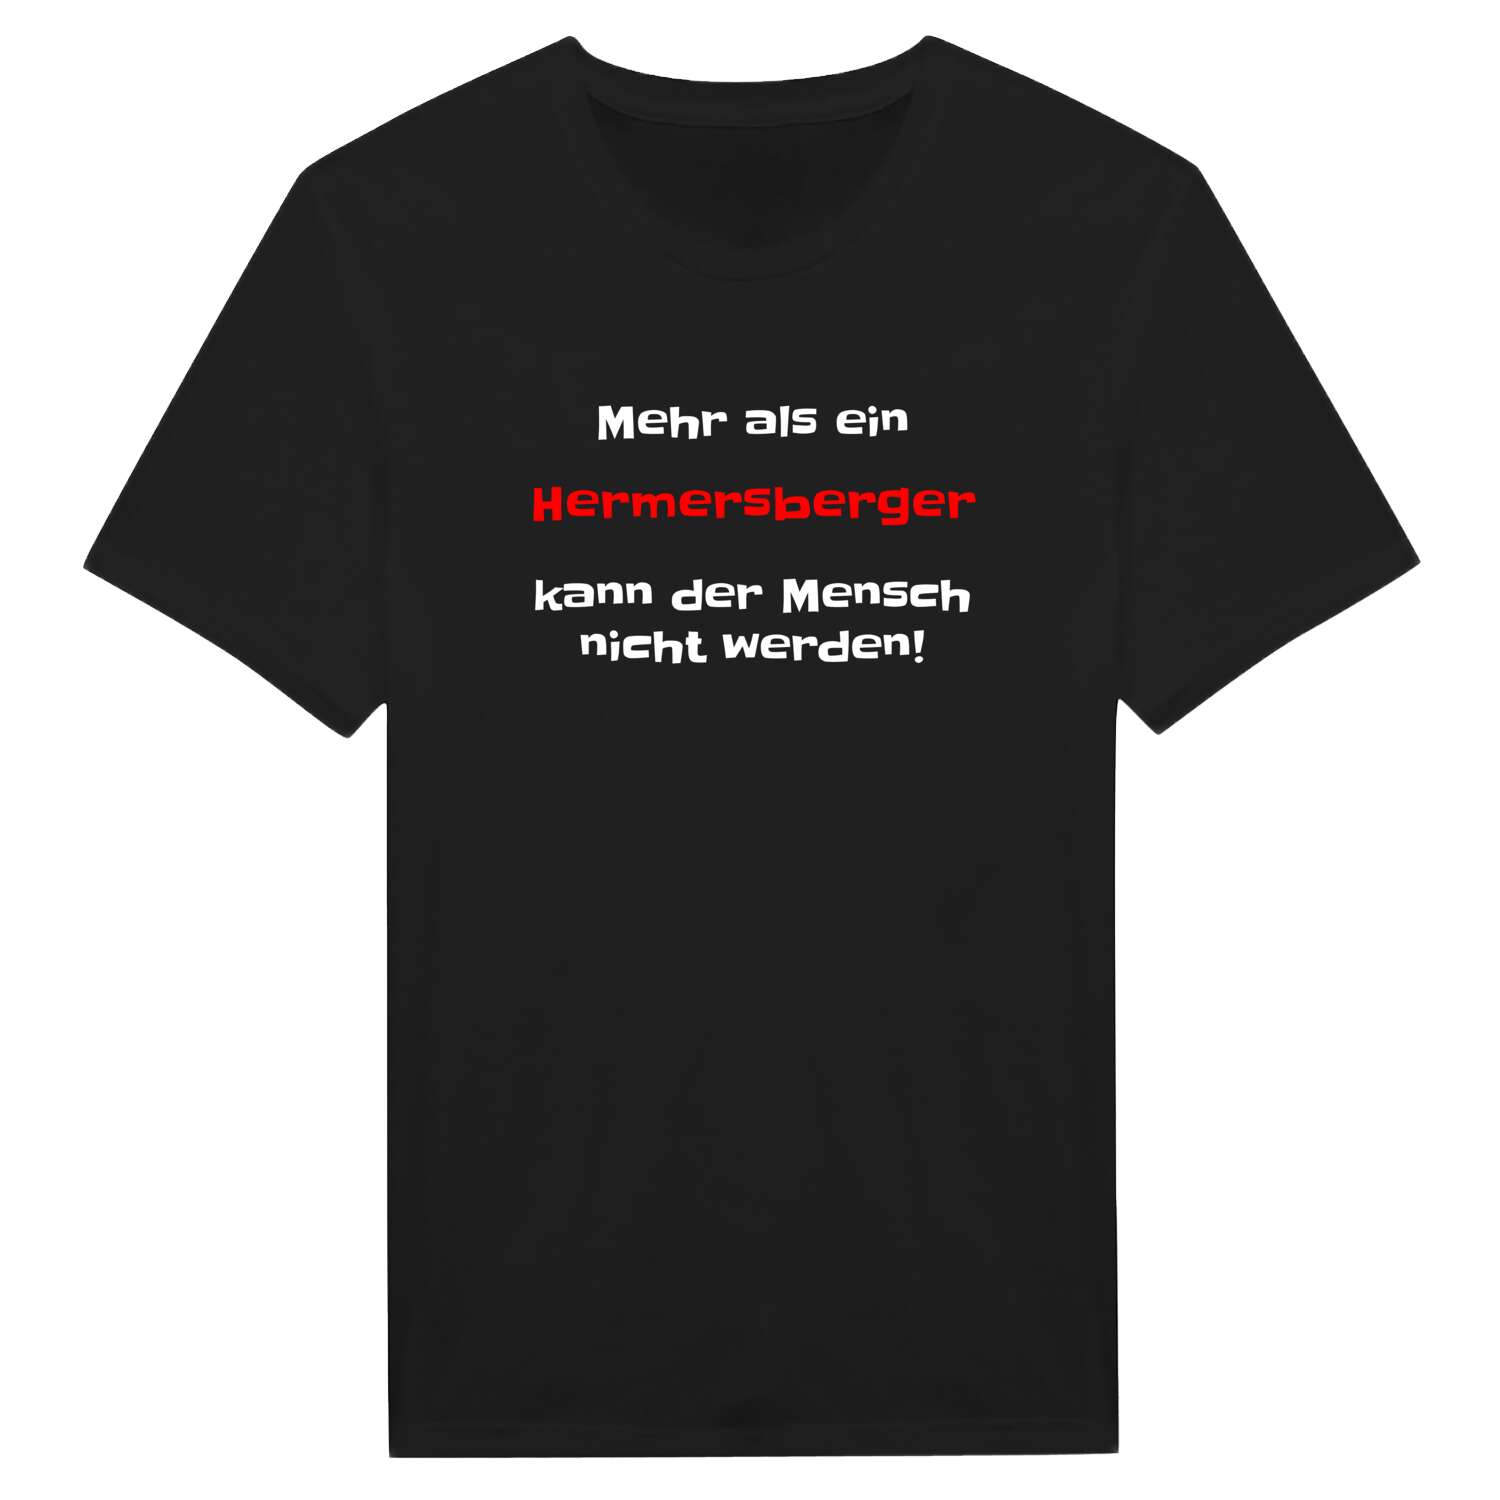 Hermersberg T-Shirt »Mehr als ein«